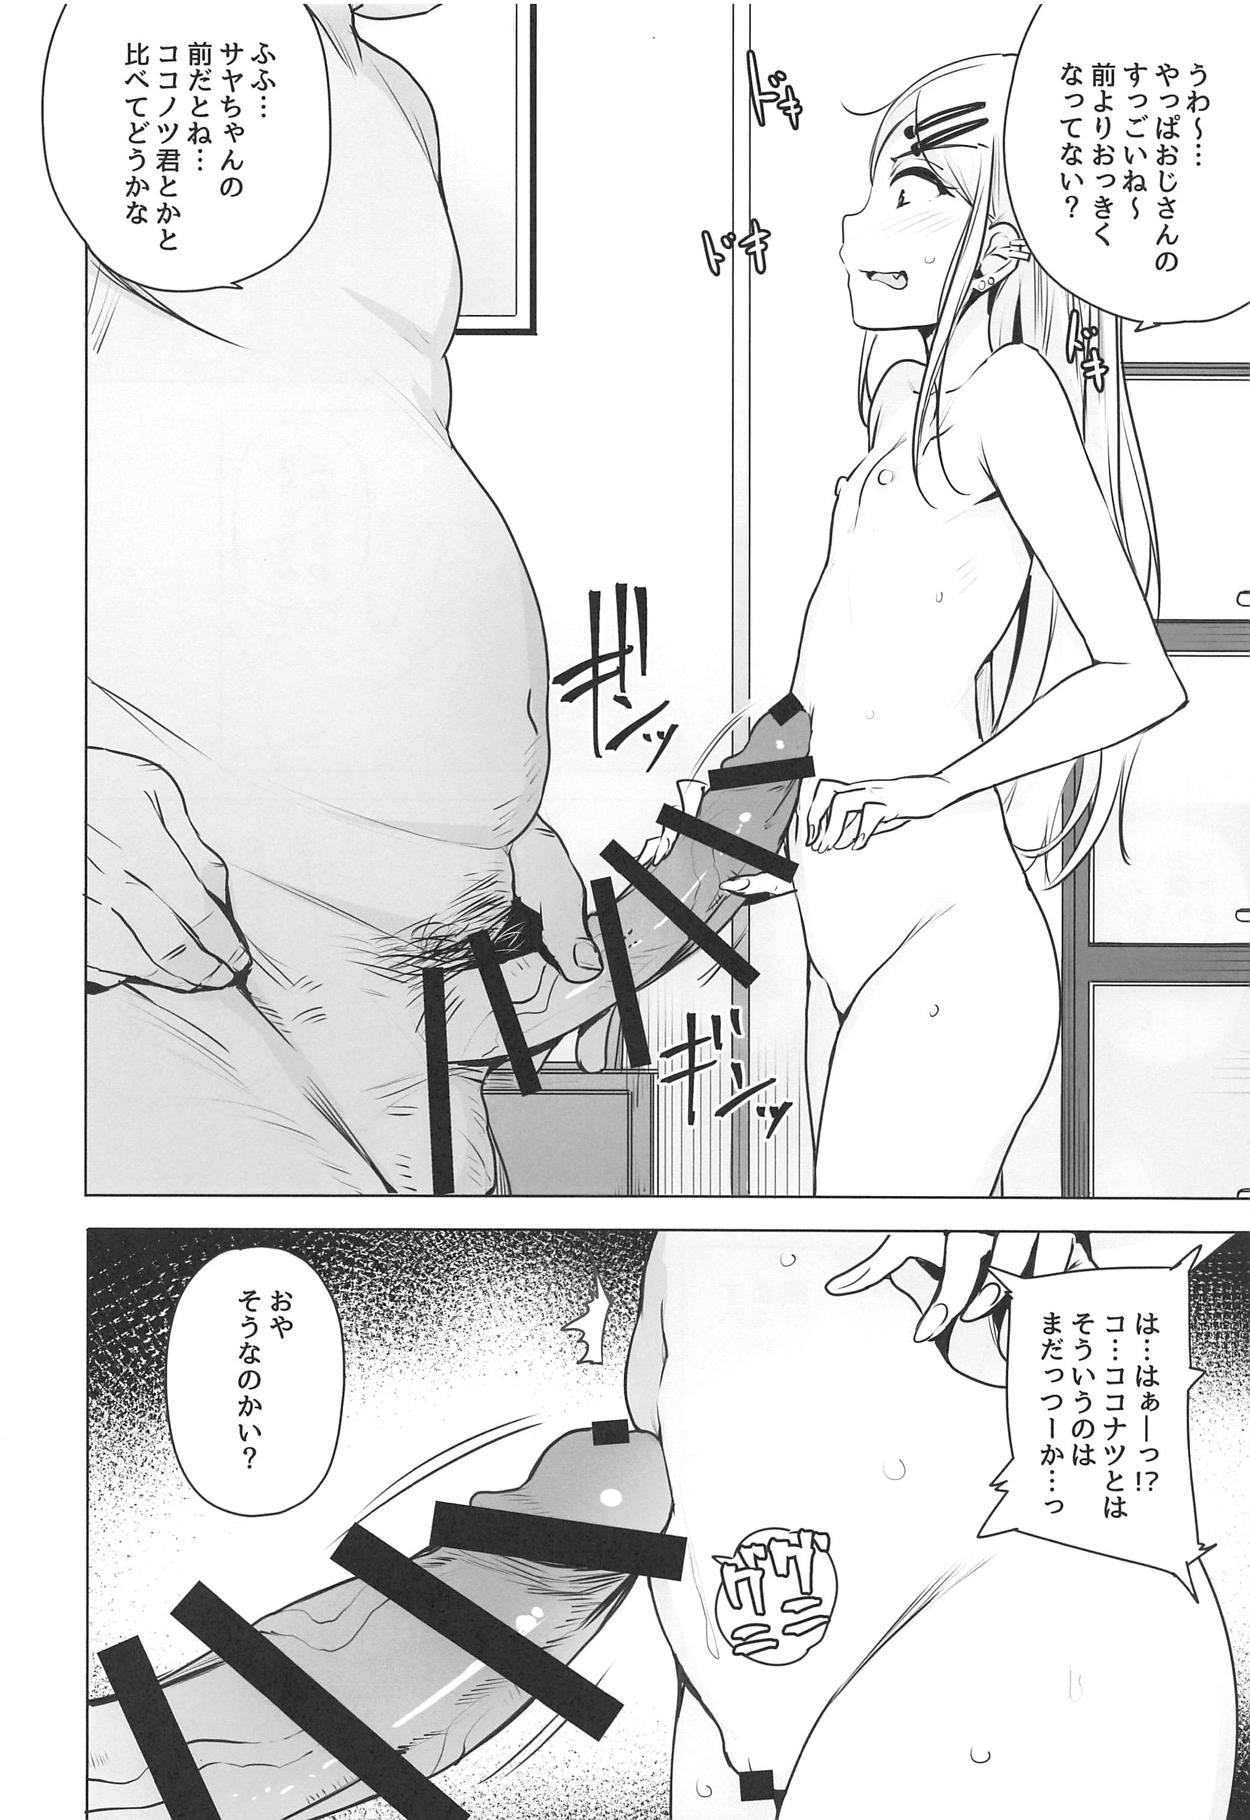 Bisex Saya-chan no ga Ichiban Oishii - Dagashi kashi Virginity - Page 4